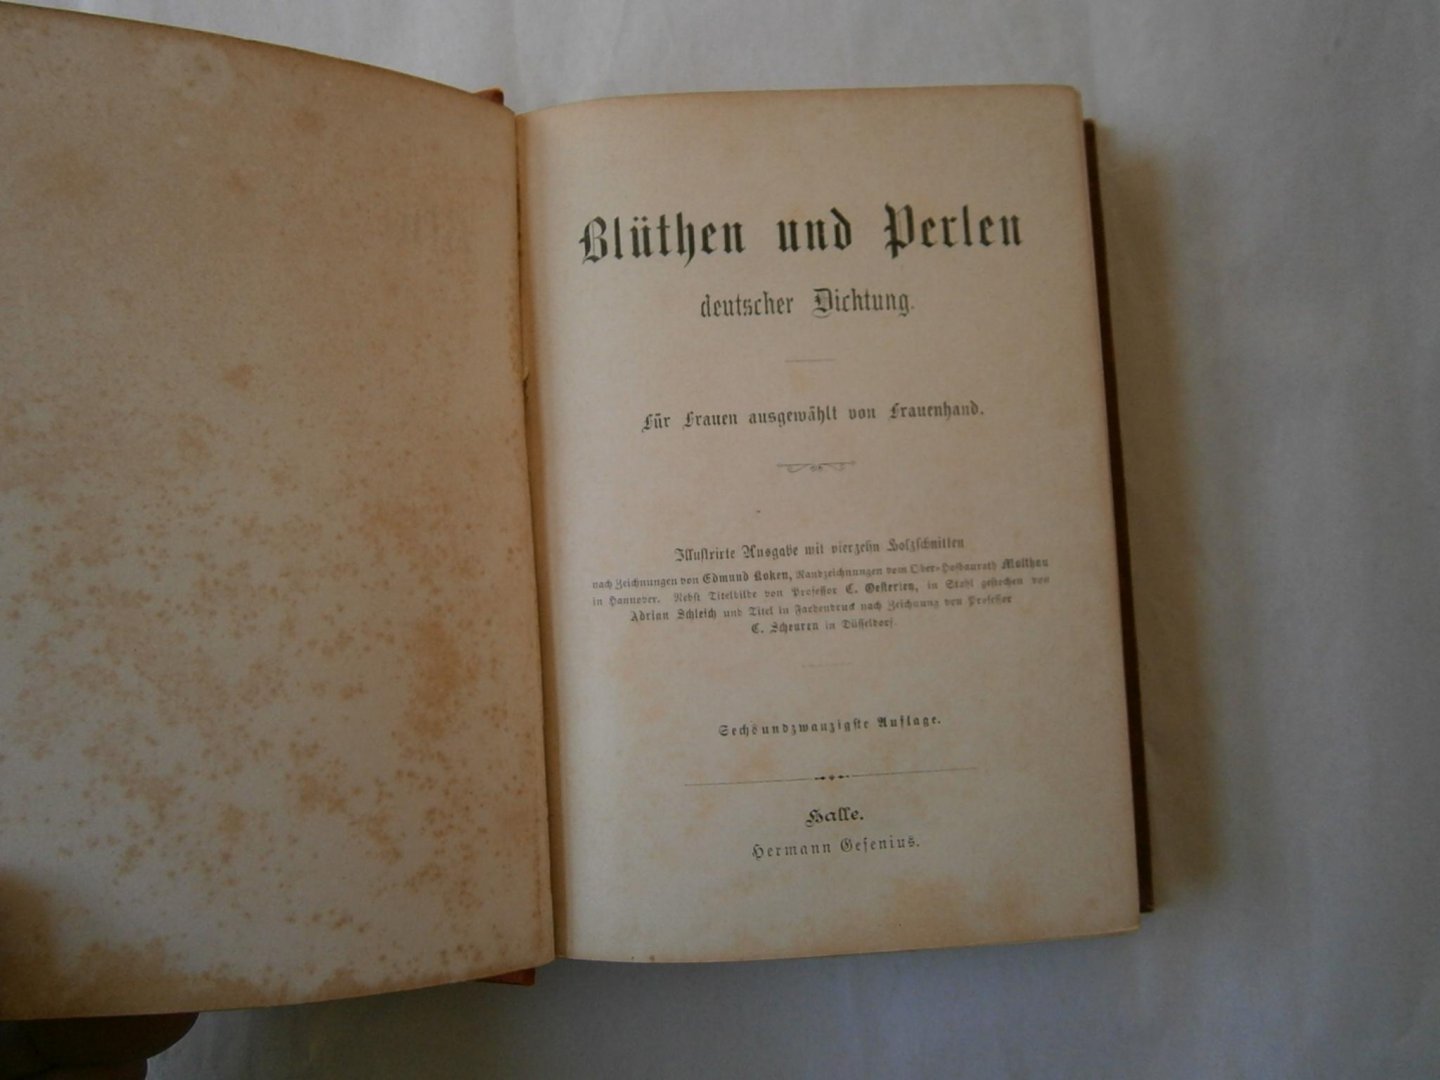 Unknown Author - Blüthen und Perlen, Deutsche Dichtung für Frauen ausgewahlt von Frauenhand